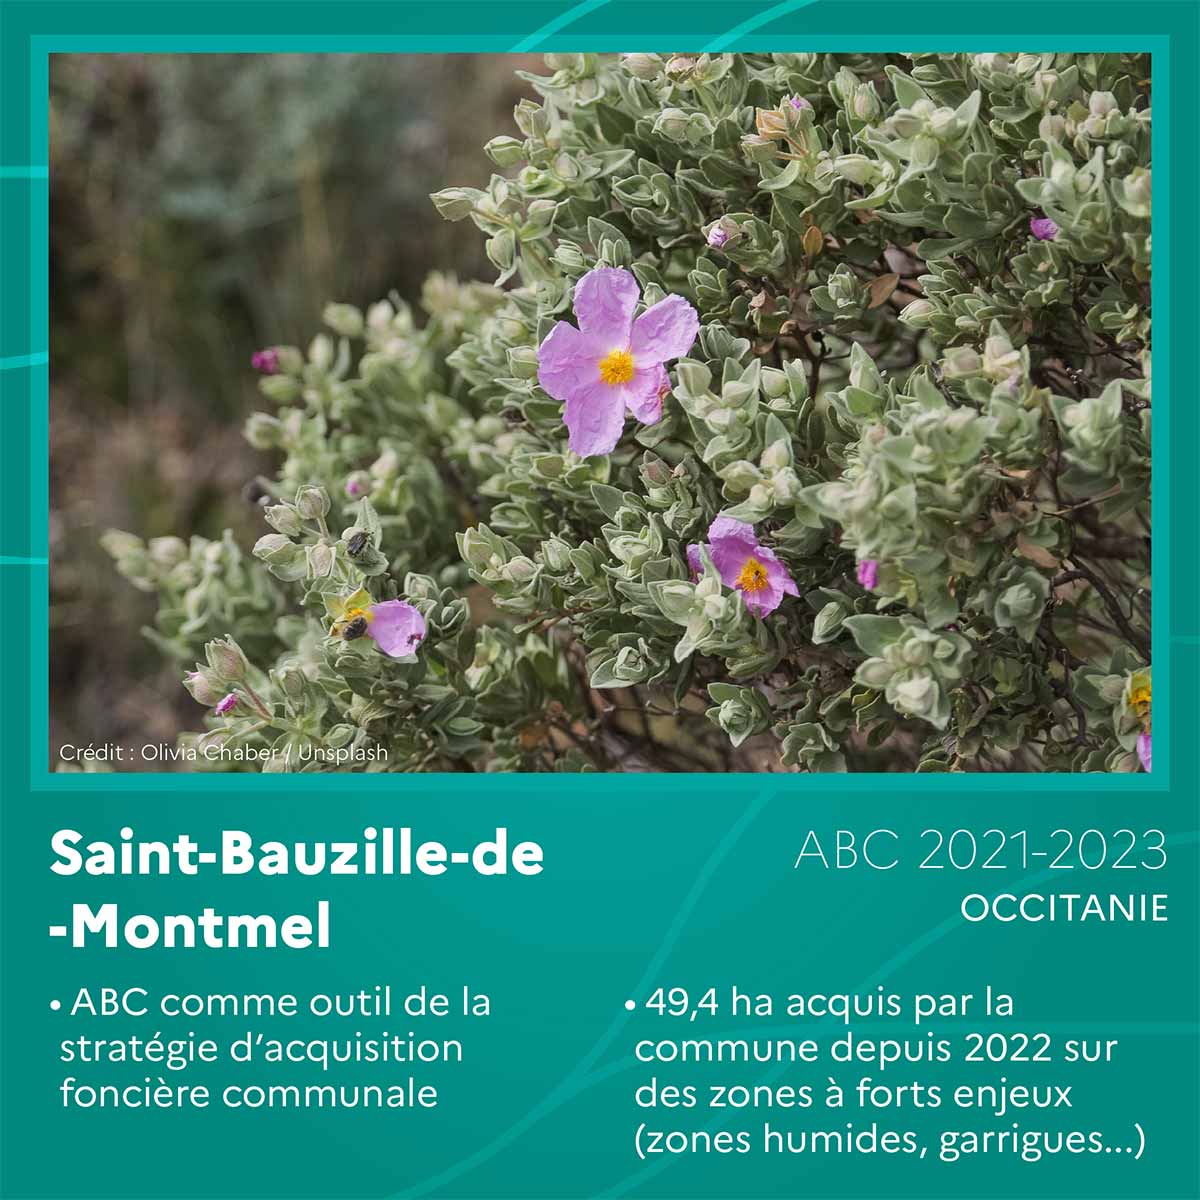 Saint-Bauzille-de-Montmel (Occitanie)